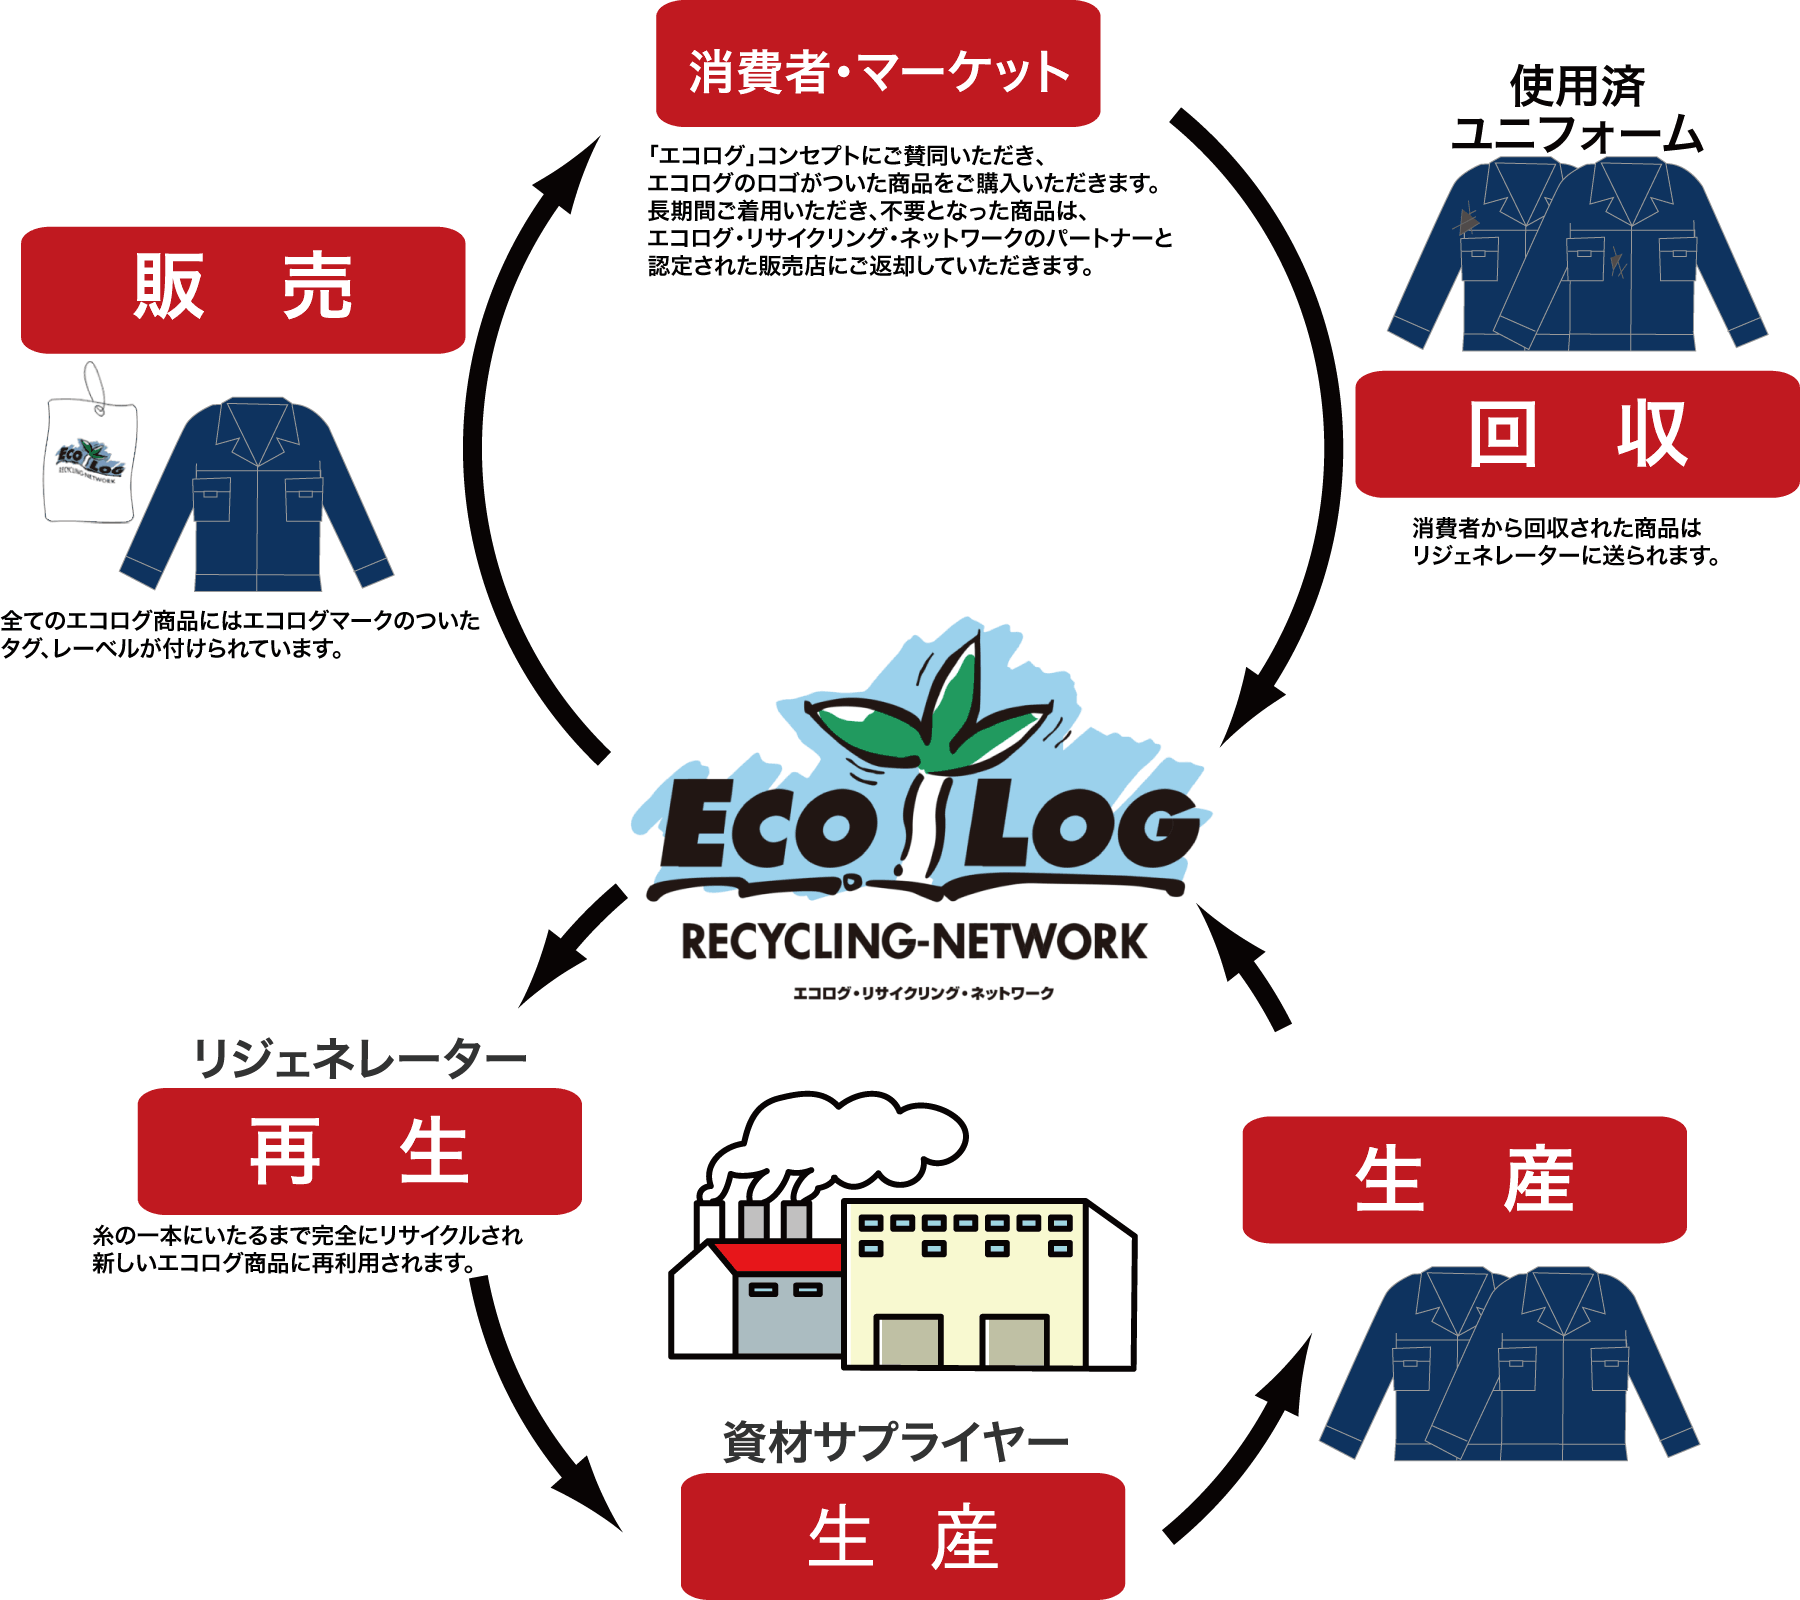 回収循環型マテリアルリサイクルシステム